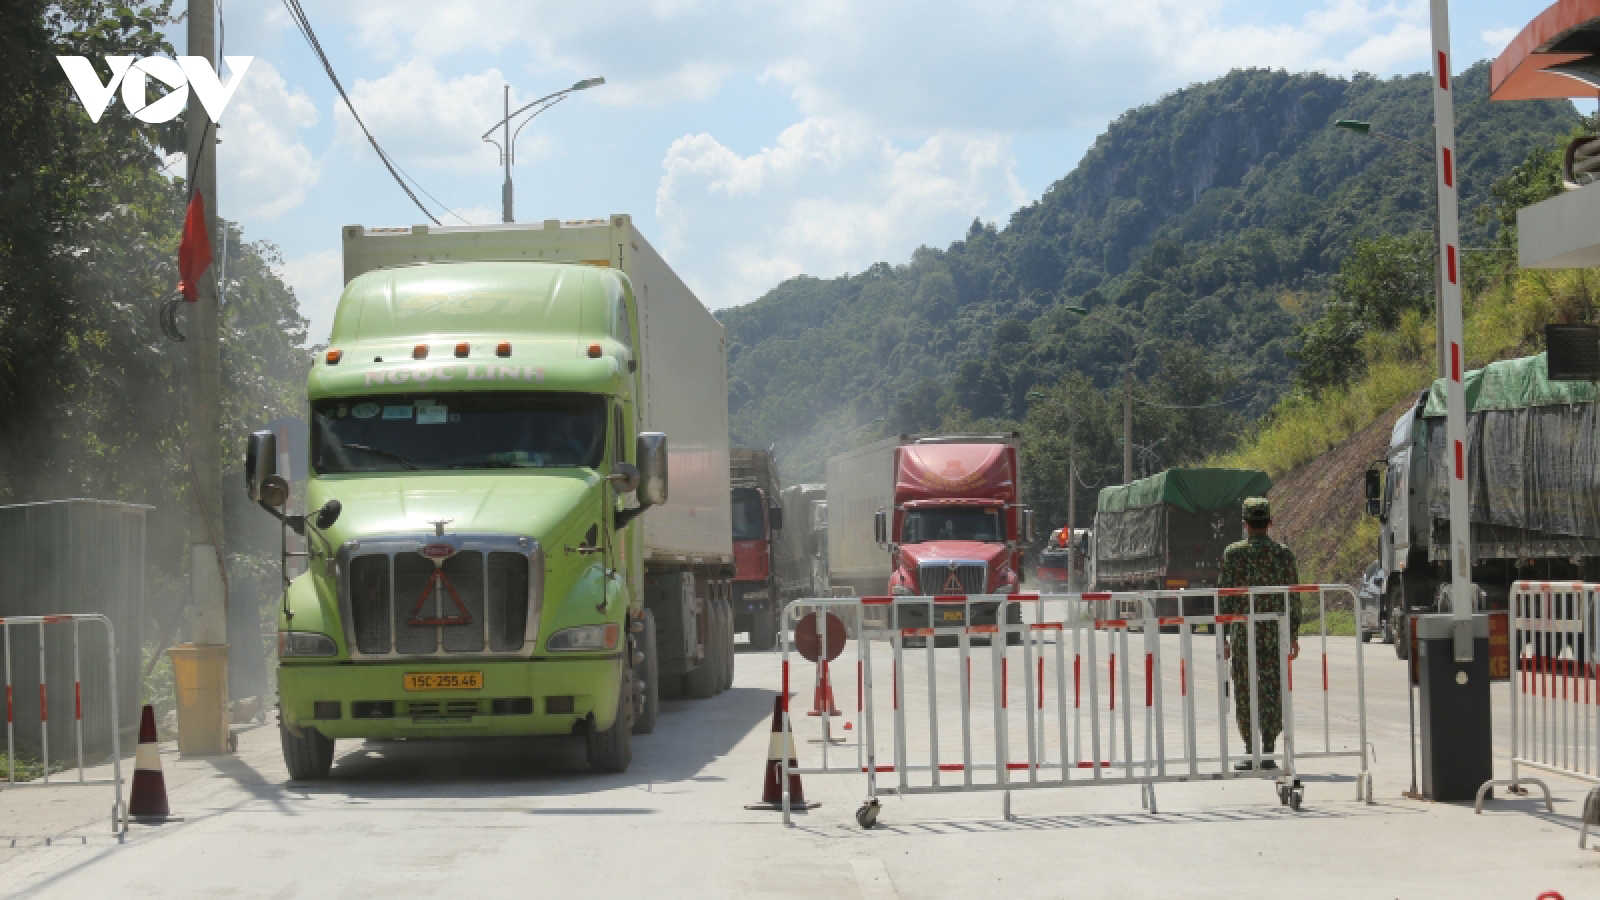 Bộ Công Thương cùng Lạng Sơn tìm cách tháo gỡ ùn tắc hàng hóa tại các cửa khẩu